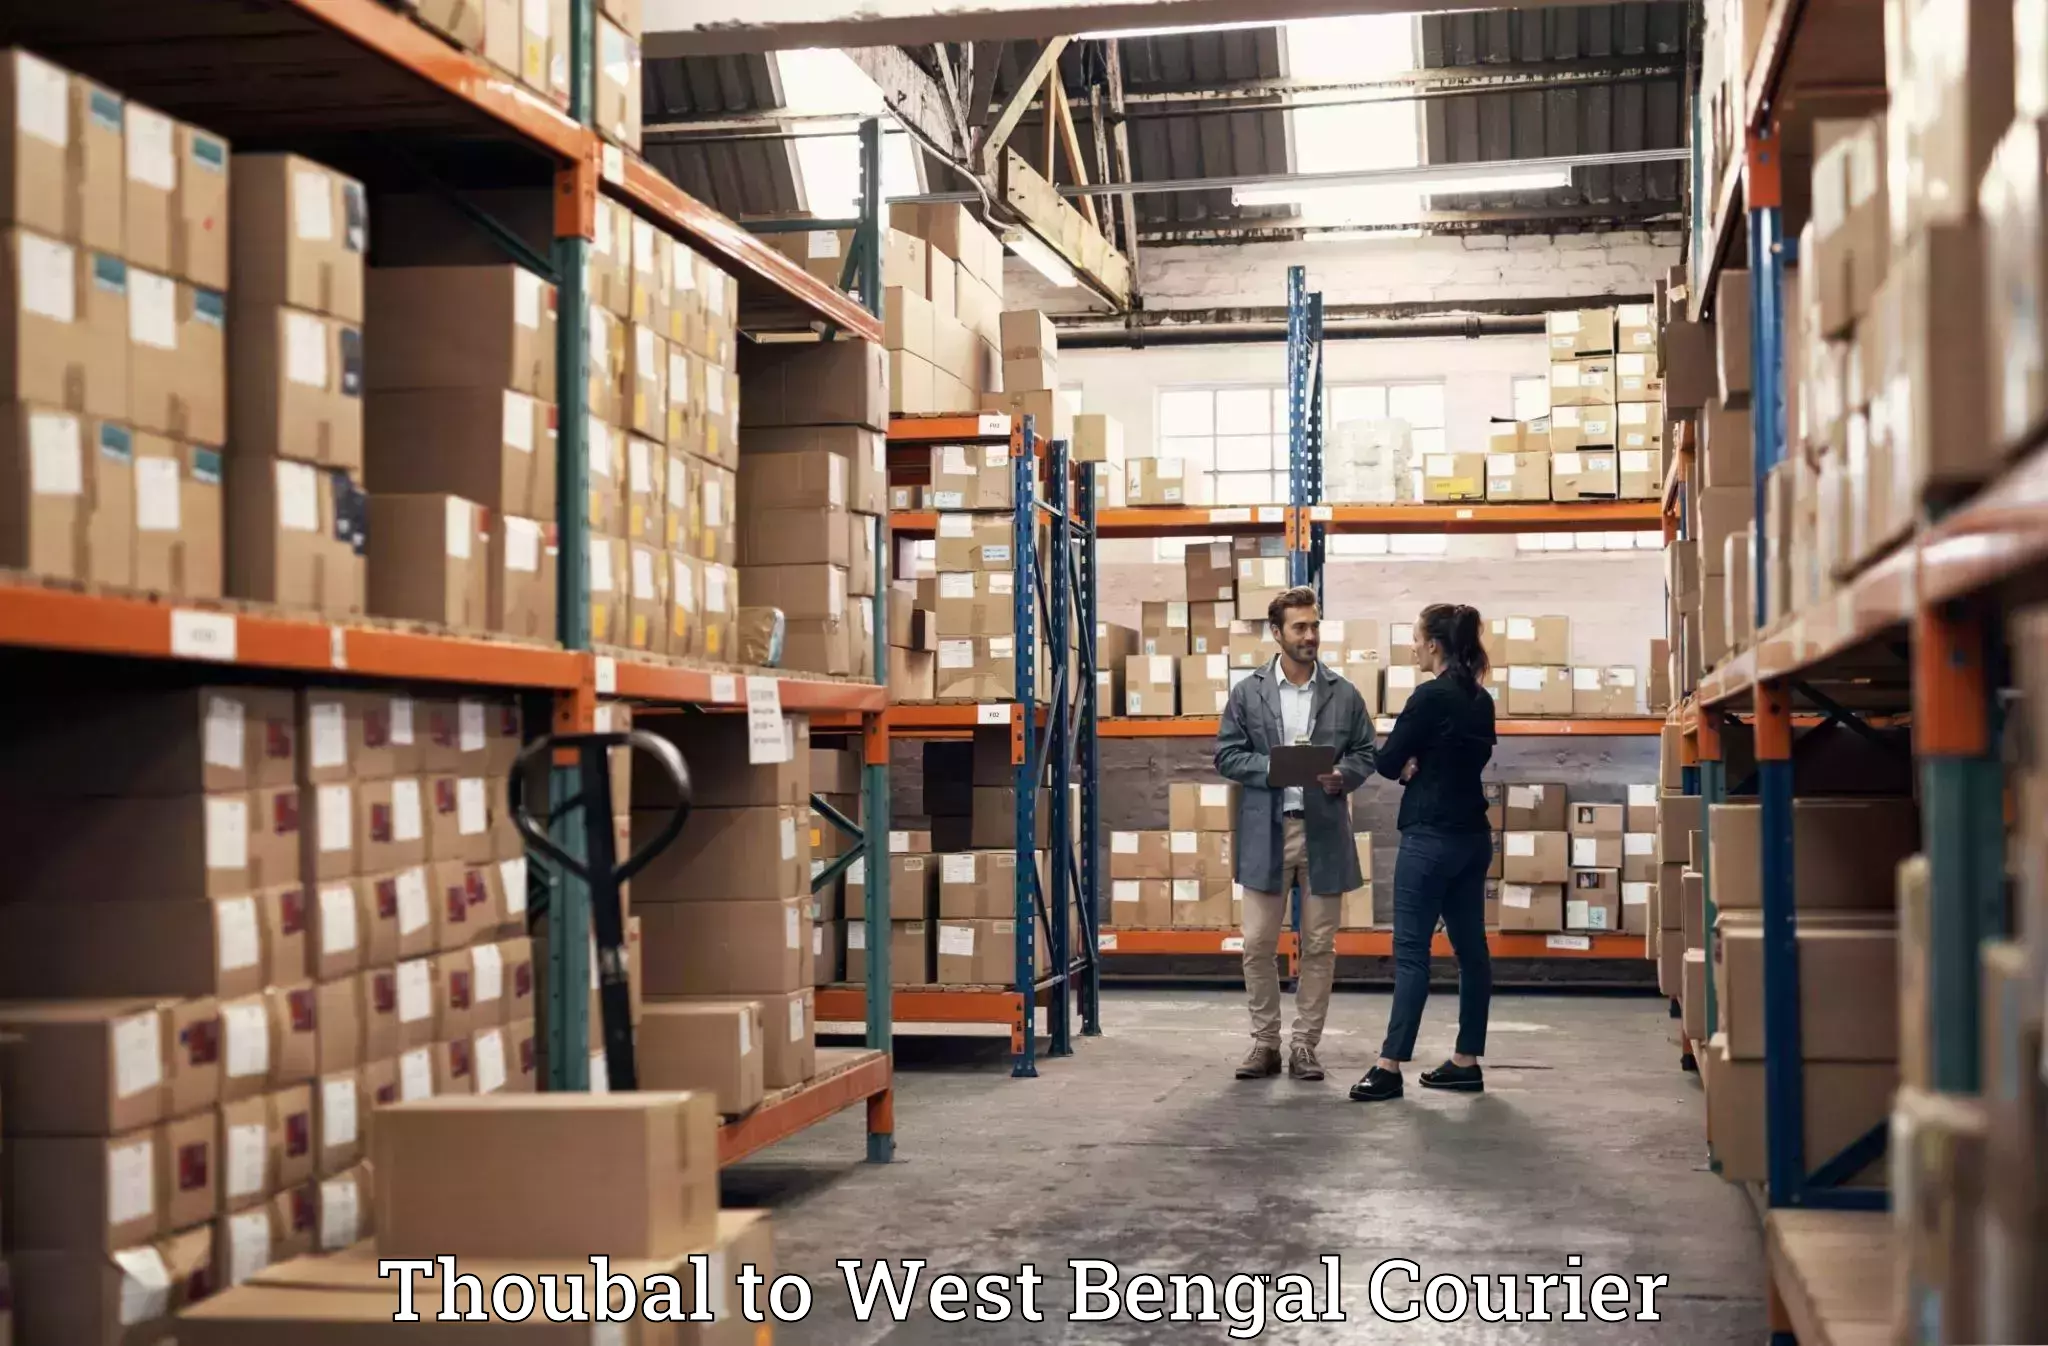 Personalized luggage shipping Thoubal to Kolkata Port